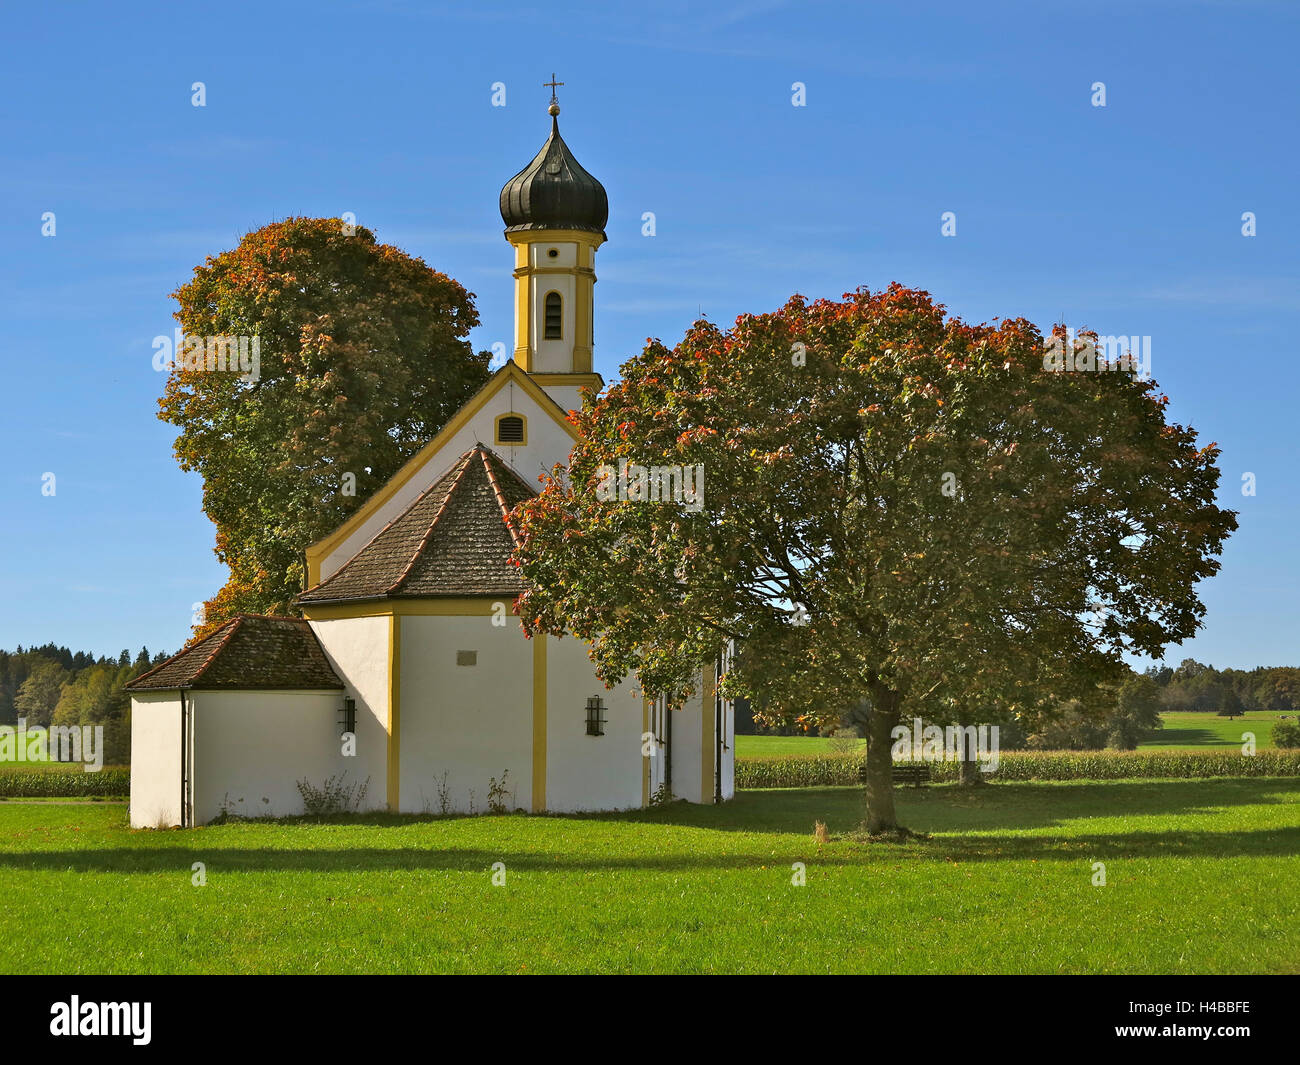 Germany, Upper Bavaria, Raisting Stock Photo